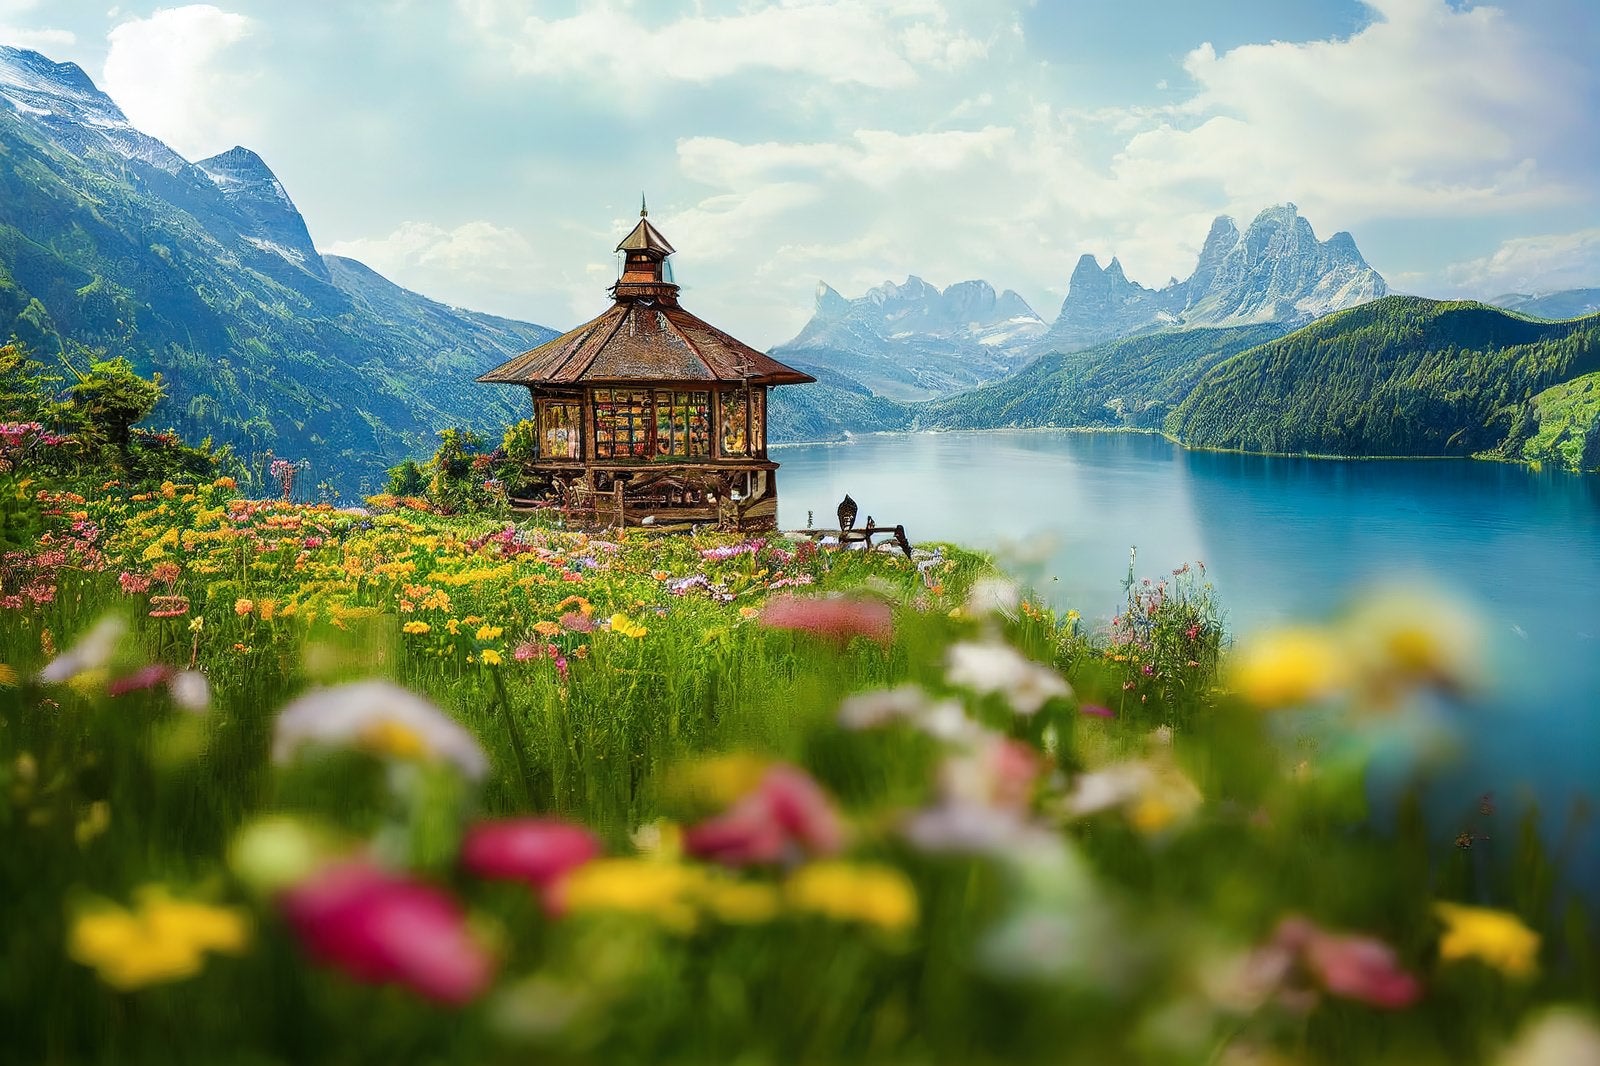 「湖畔を眺める小屋」の写真